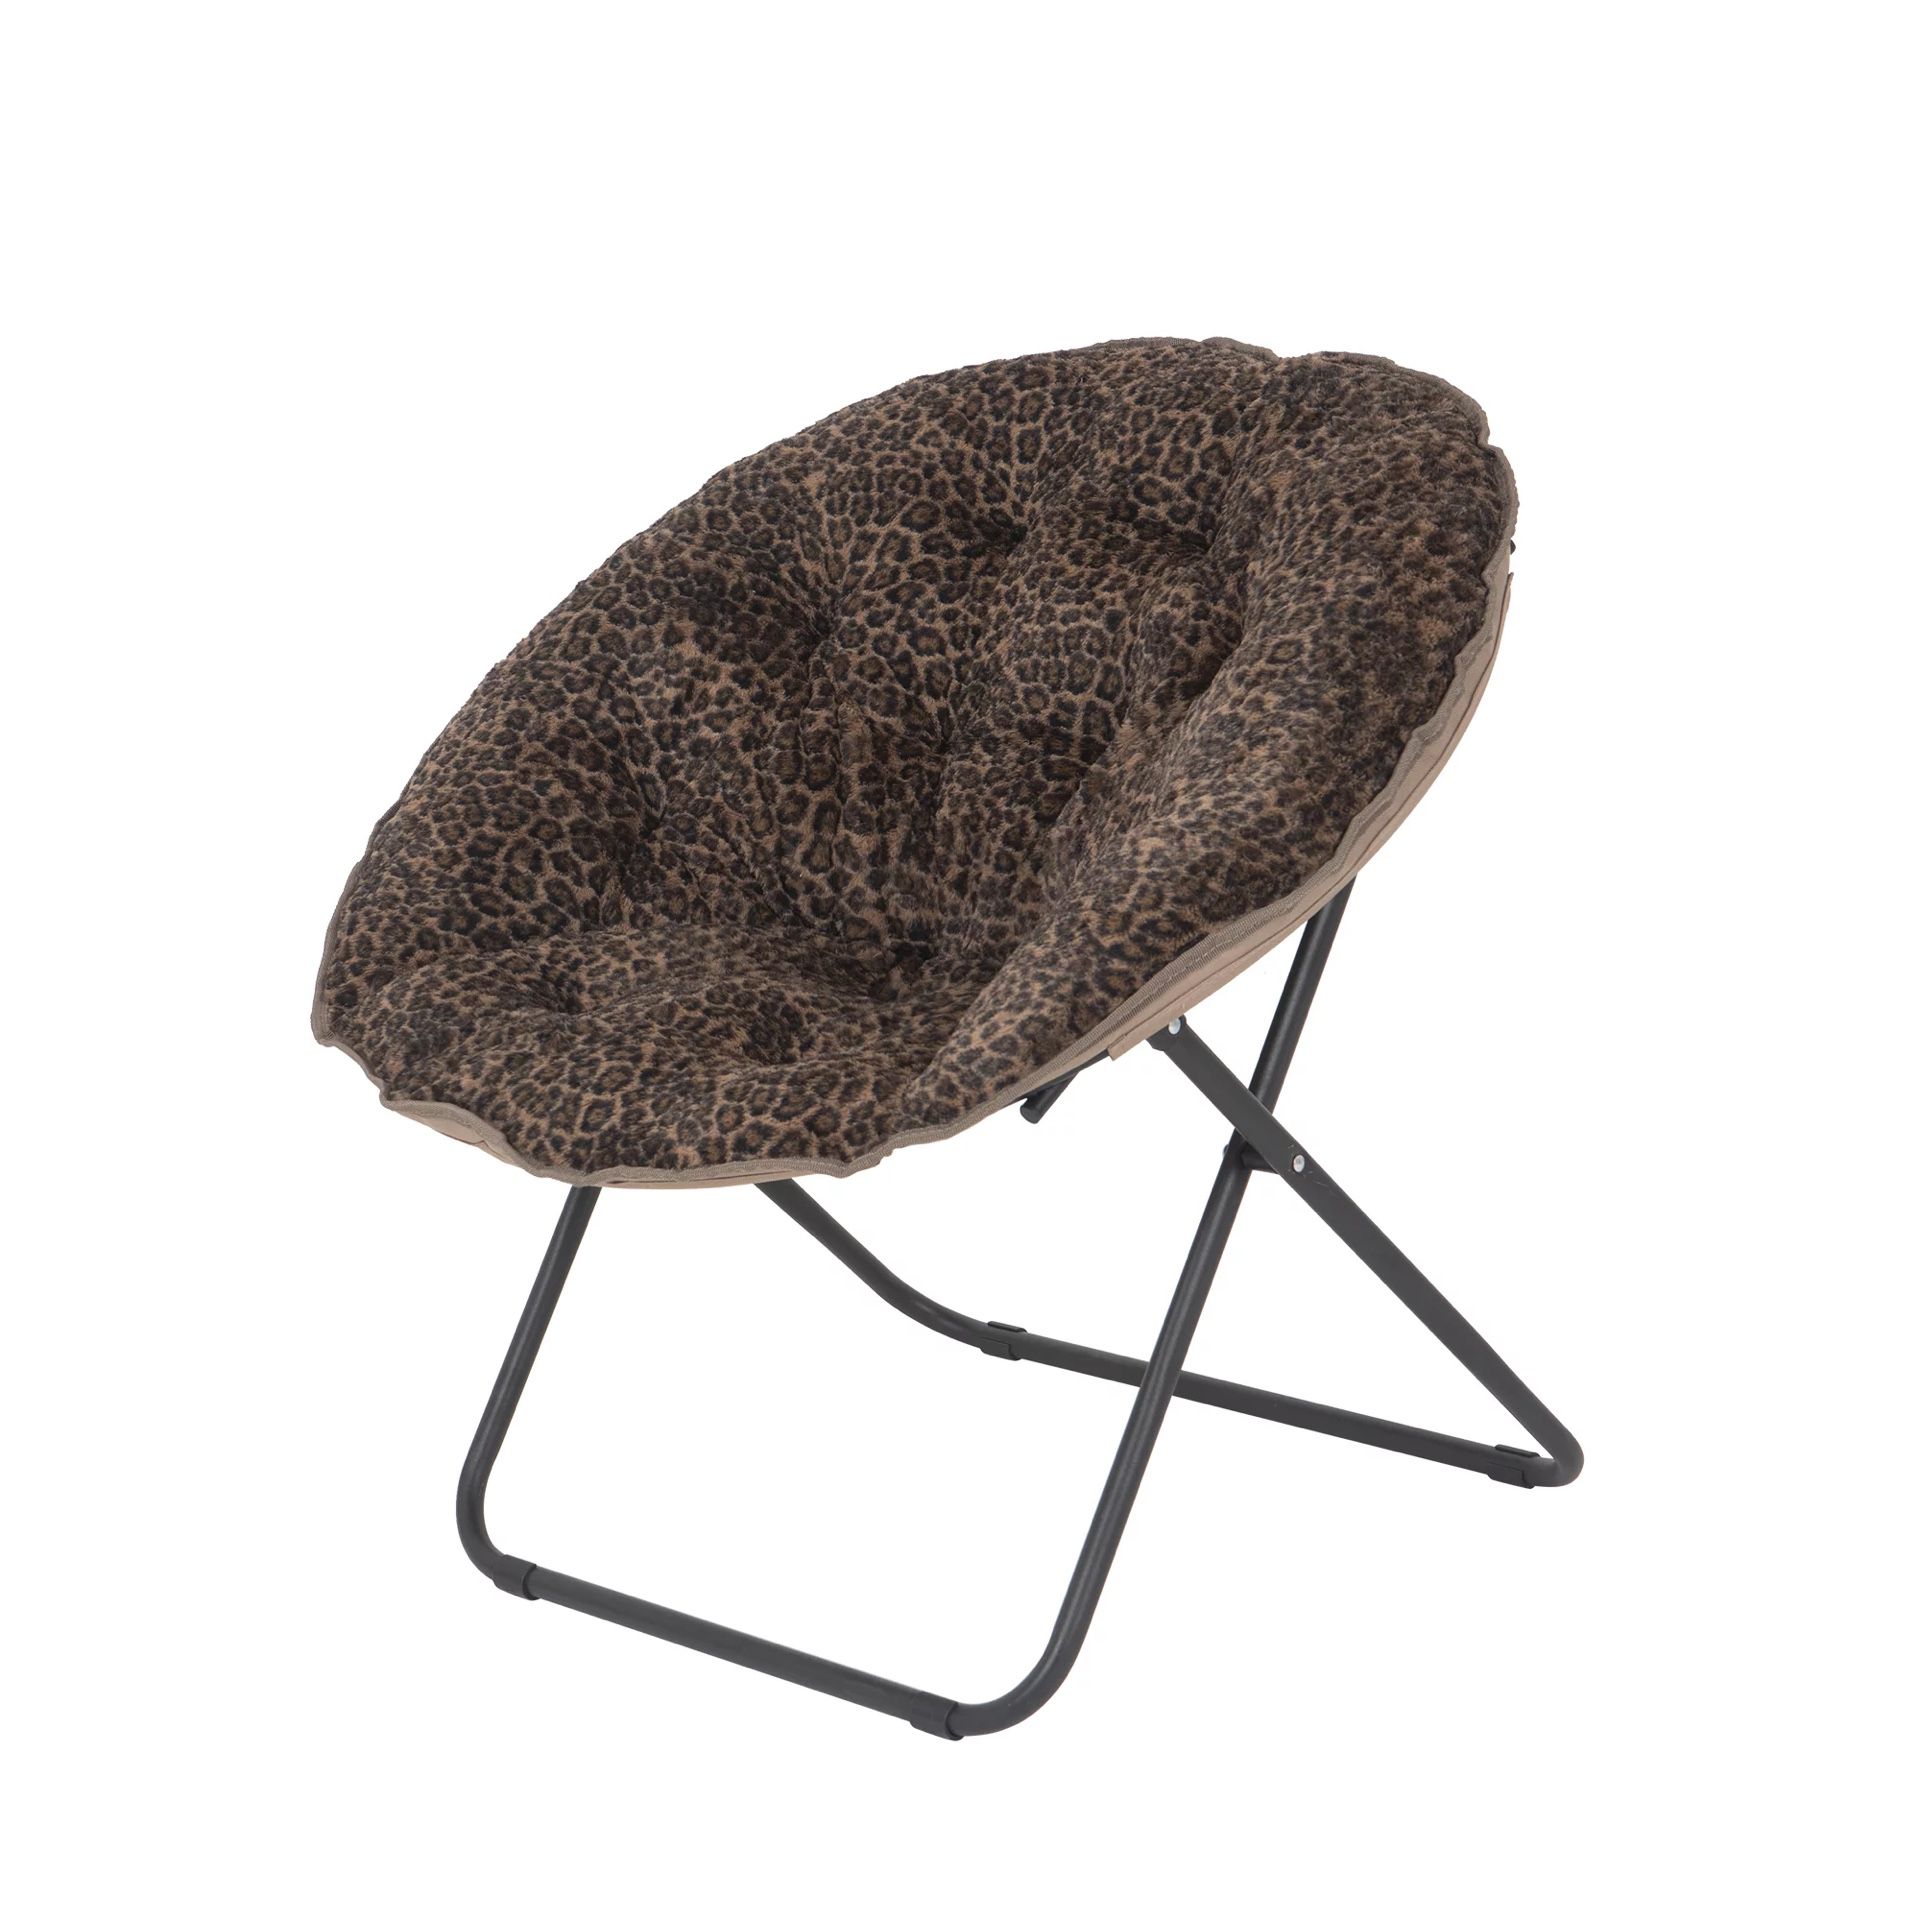 Mainstays Plush Saucer Chair, Cheetah Brown - 31in W*27.95" D*28.74" H